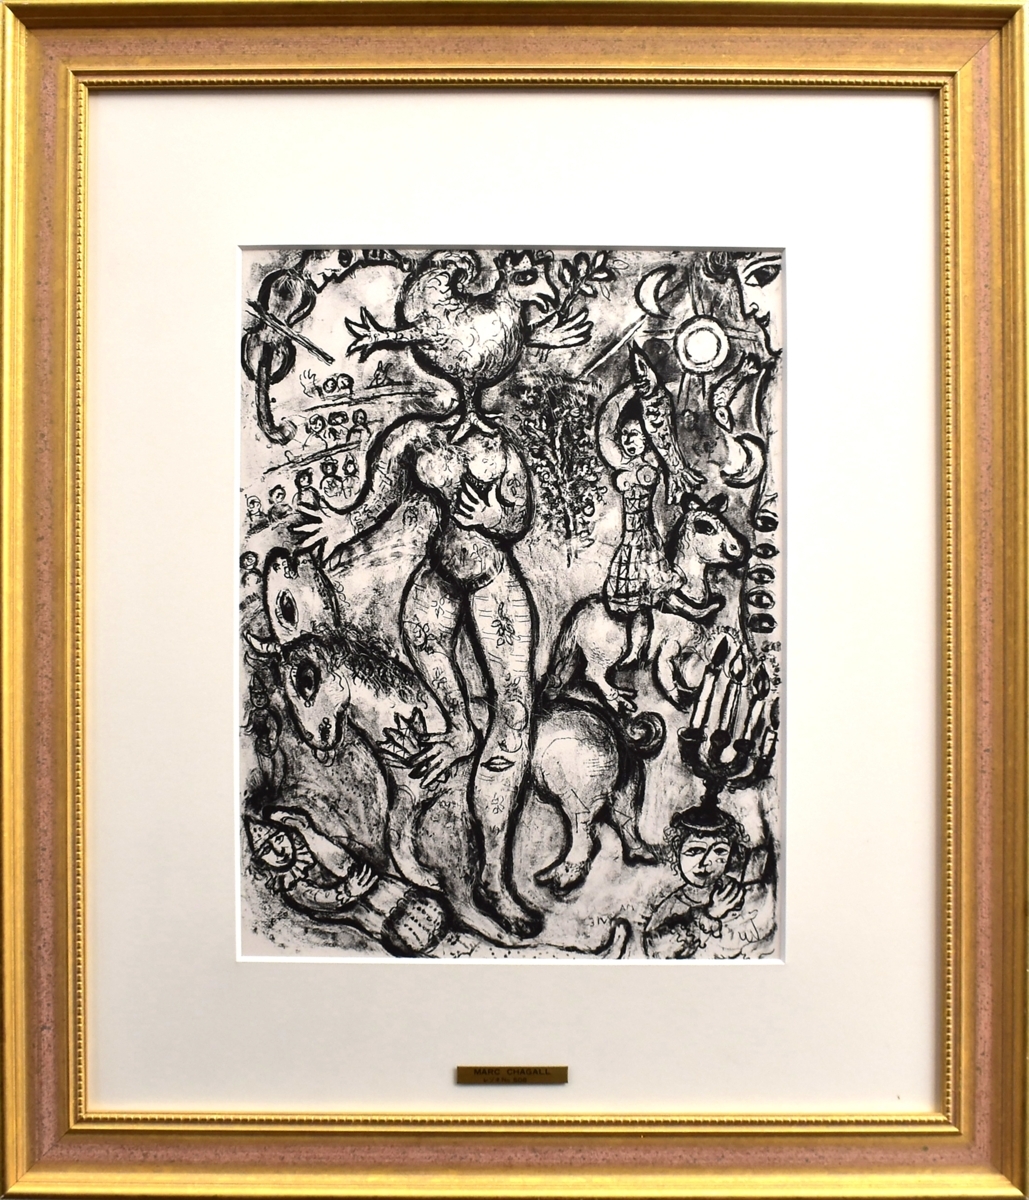 愛と感情を謳い続けた色彩の魔術師　二十世紀を代表する画家　マルク・シャガール　リトグラフ　「サーカス」　1967年制作【正光画廊】